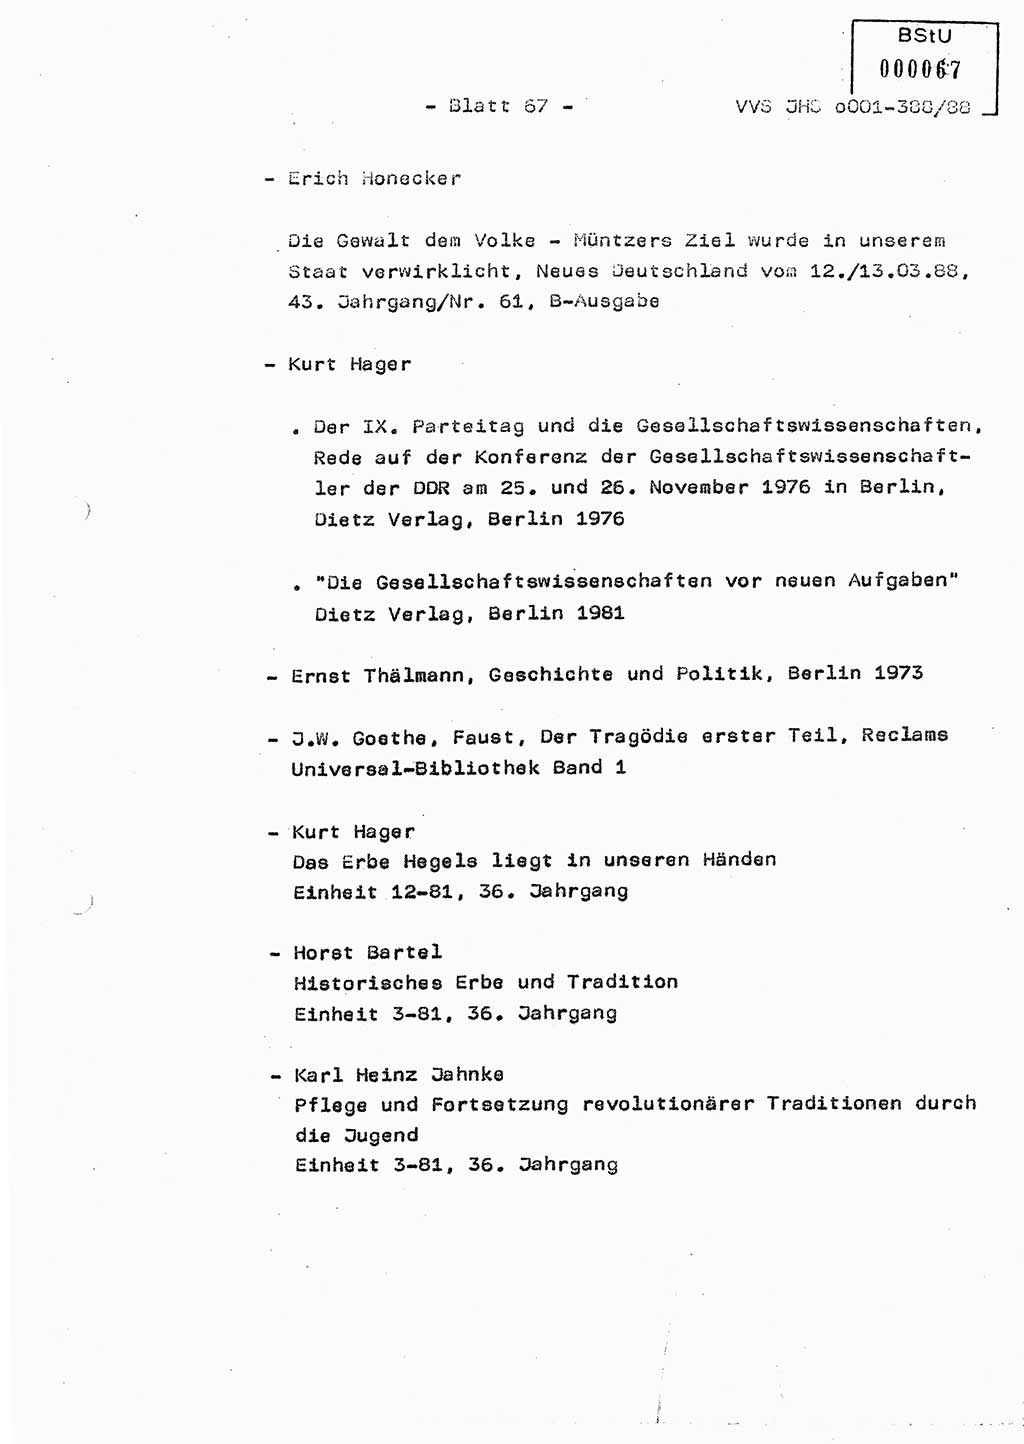 Diplomarbeit Hauptmann Heinz Brixel (Abt. ⅩⅣ), Ministerium für Staatssicherheit (MfS) [Deutsche Demokratische Republik (DDR)], Juristische Hochschule (JHS), Vertrauliche Verschlußsache (VVS) o001-388/88, Potsdam 1988, Blatt 67 (Dipl.-Arb. MfS DDR JHS VVS o001-388/88 1988, Bl. 67)